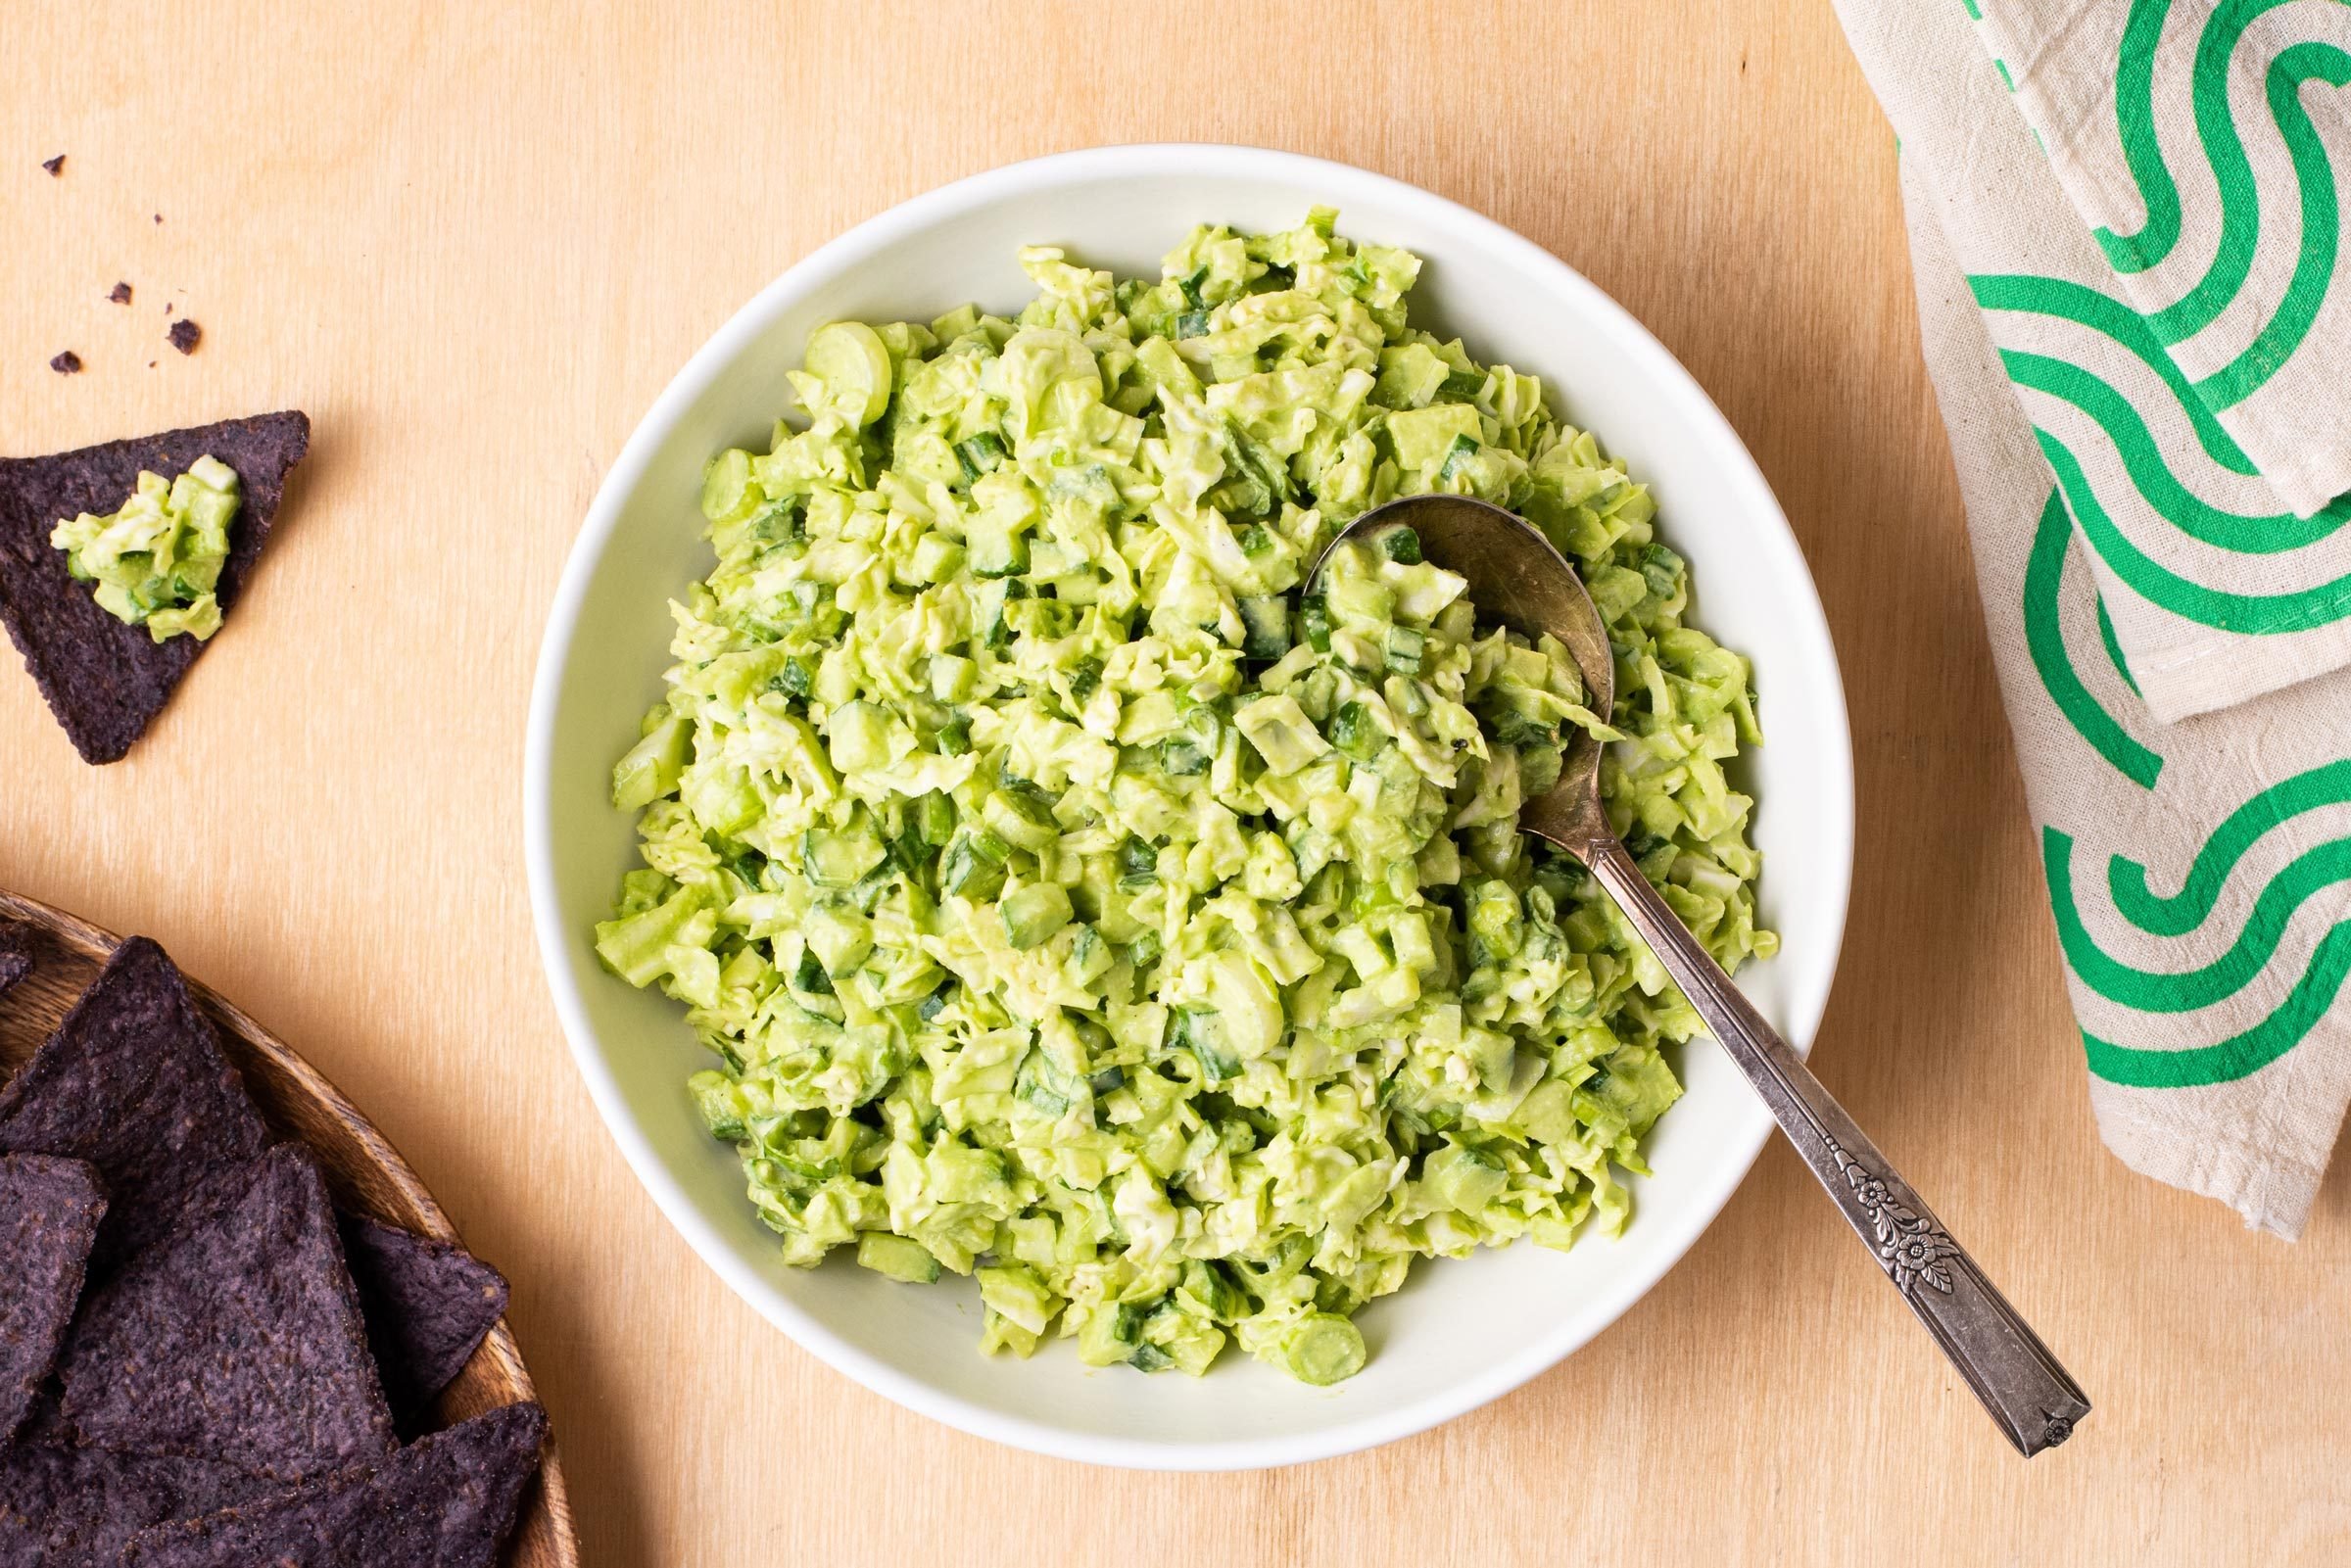 https://www.tasteofhome.com/wp-content/uploads/2023/06/how-to-make-green-goddess-salad-5-Alexandra-Shytsman-for-Taste-of-Home-.jpg